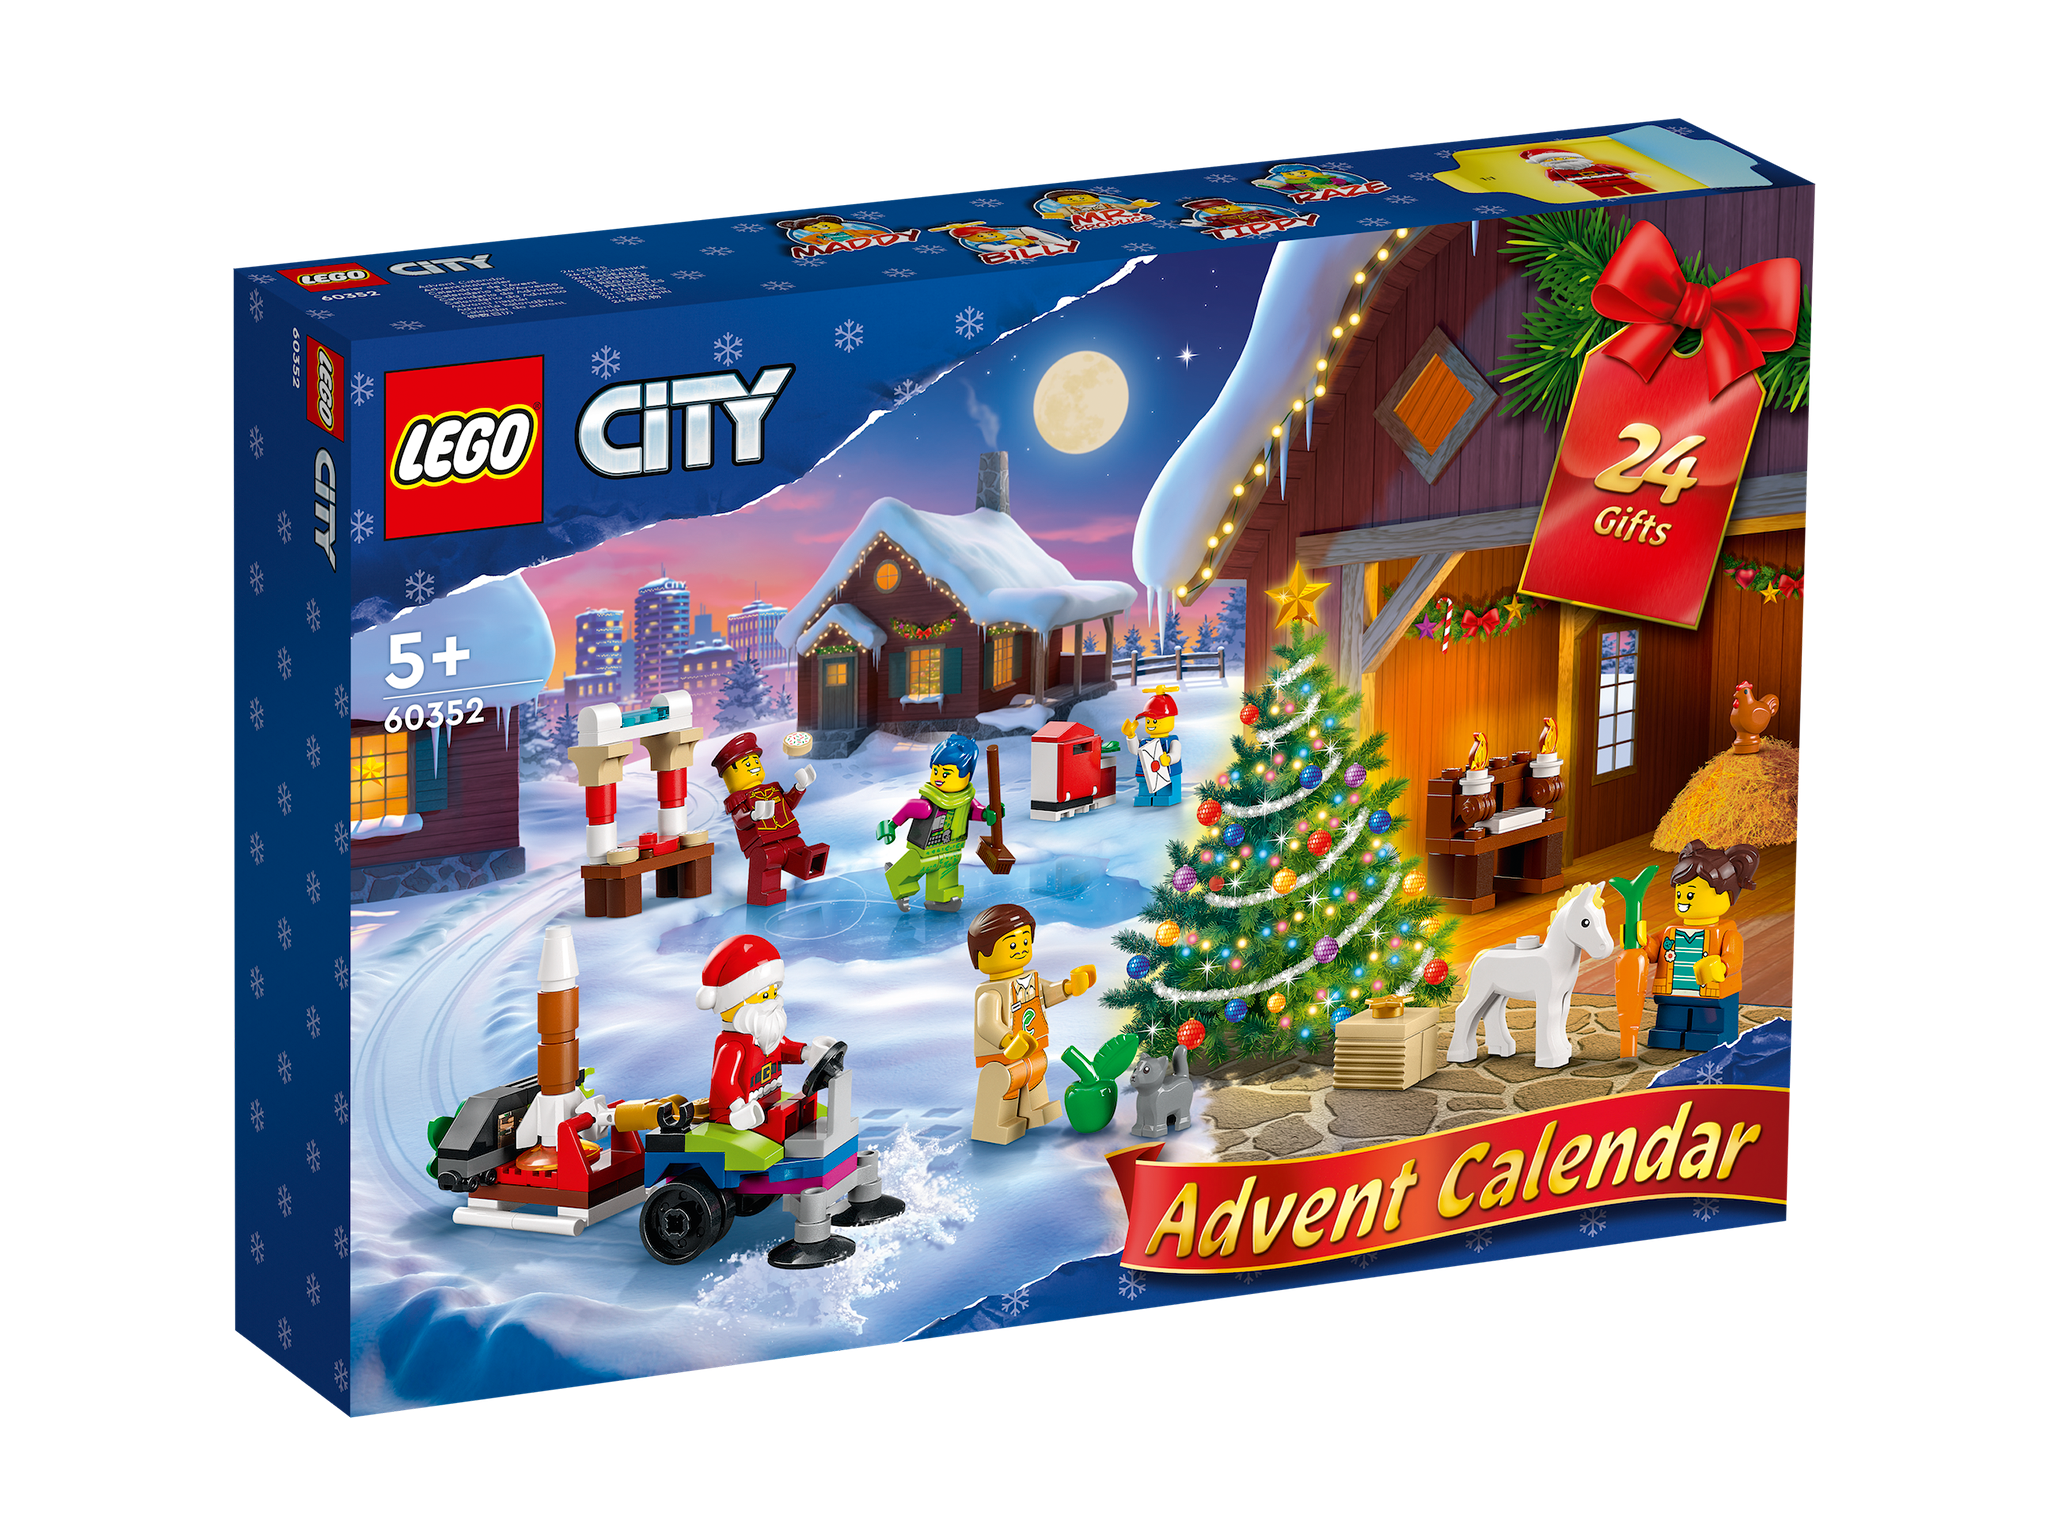 Lego City advent calendar